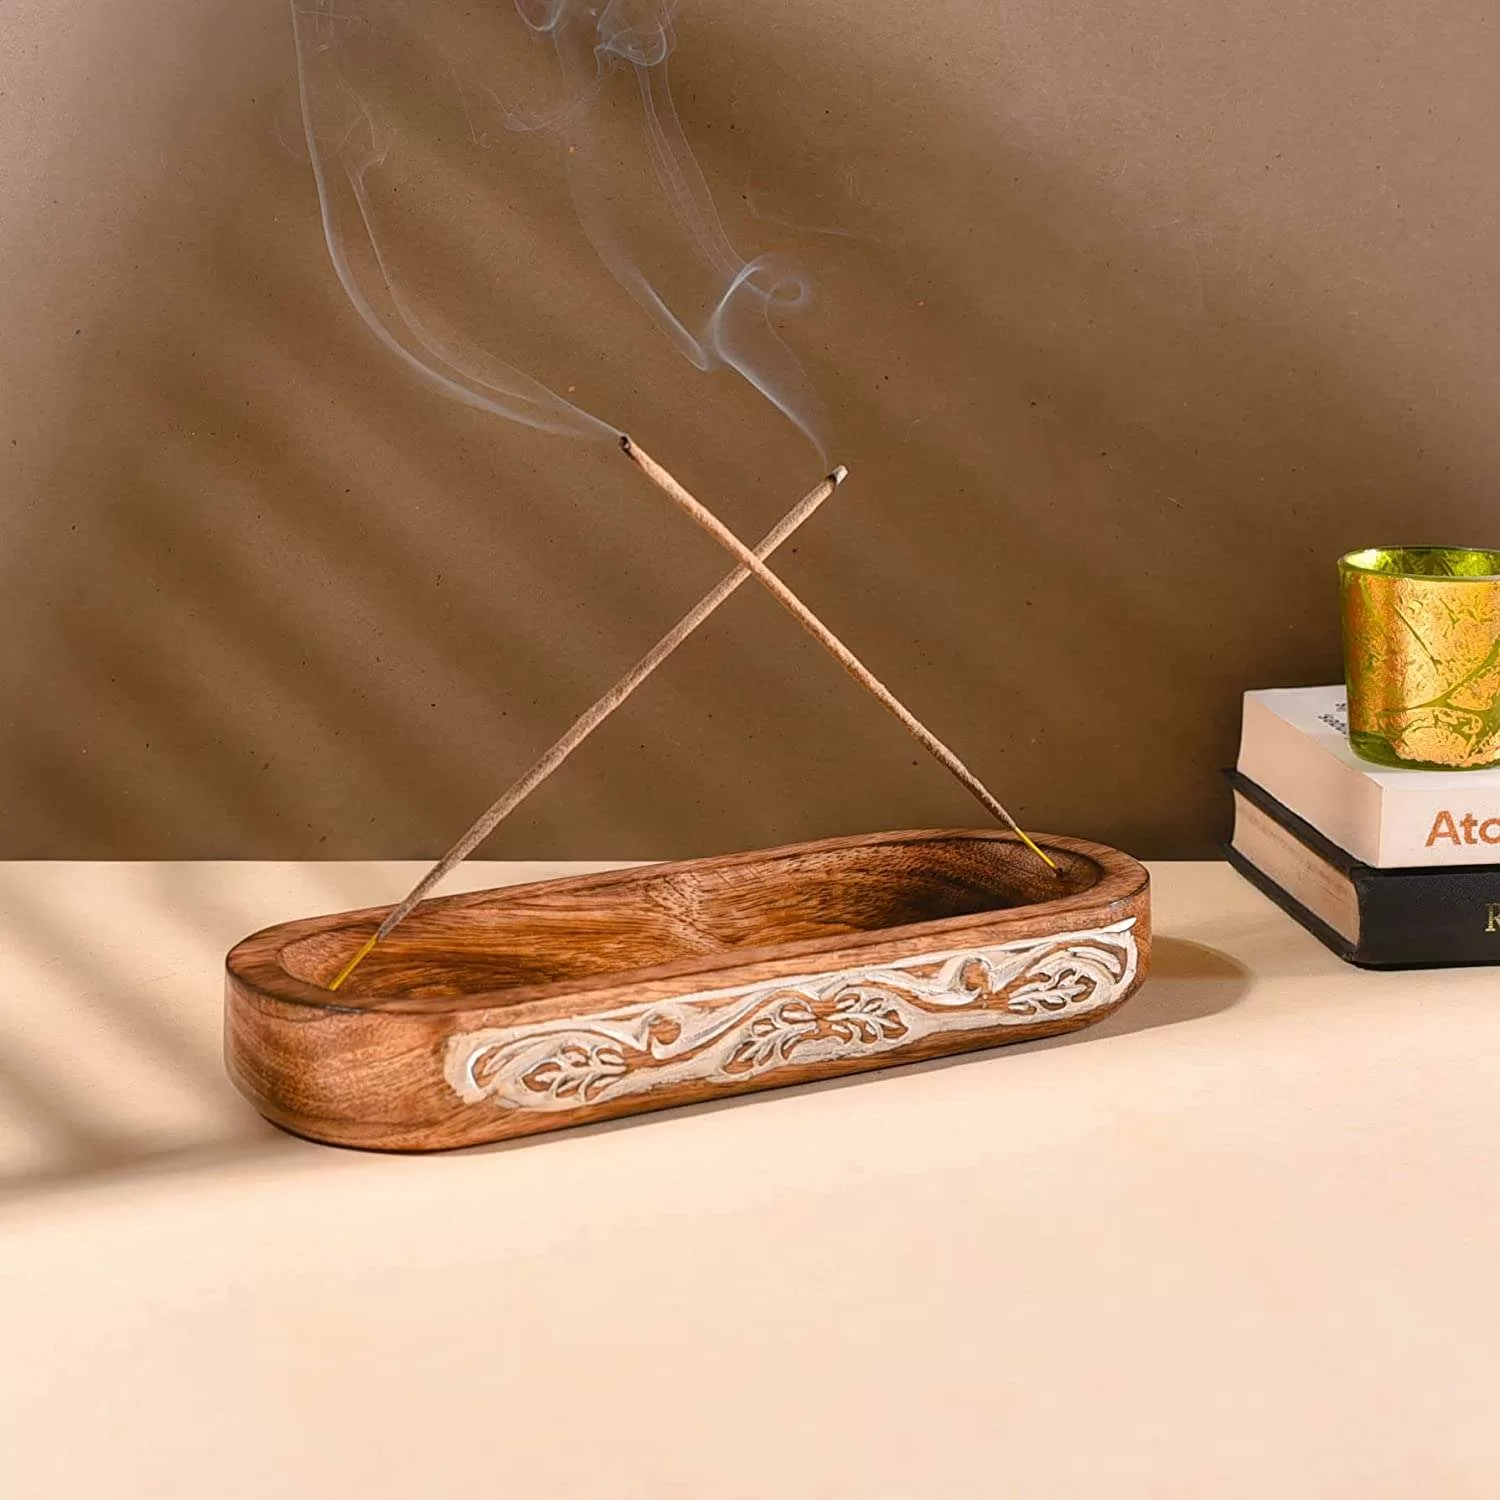 Wooden incense burner